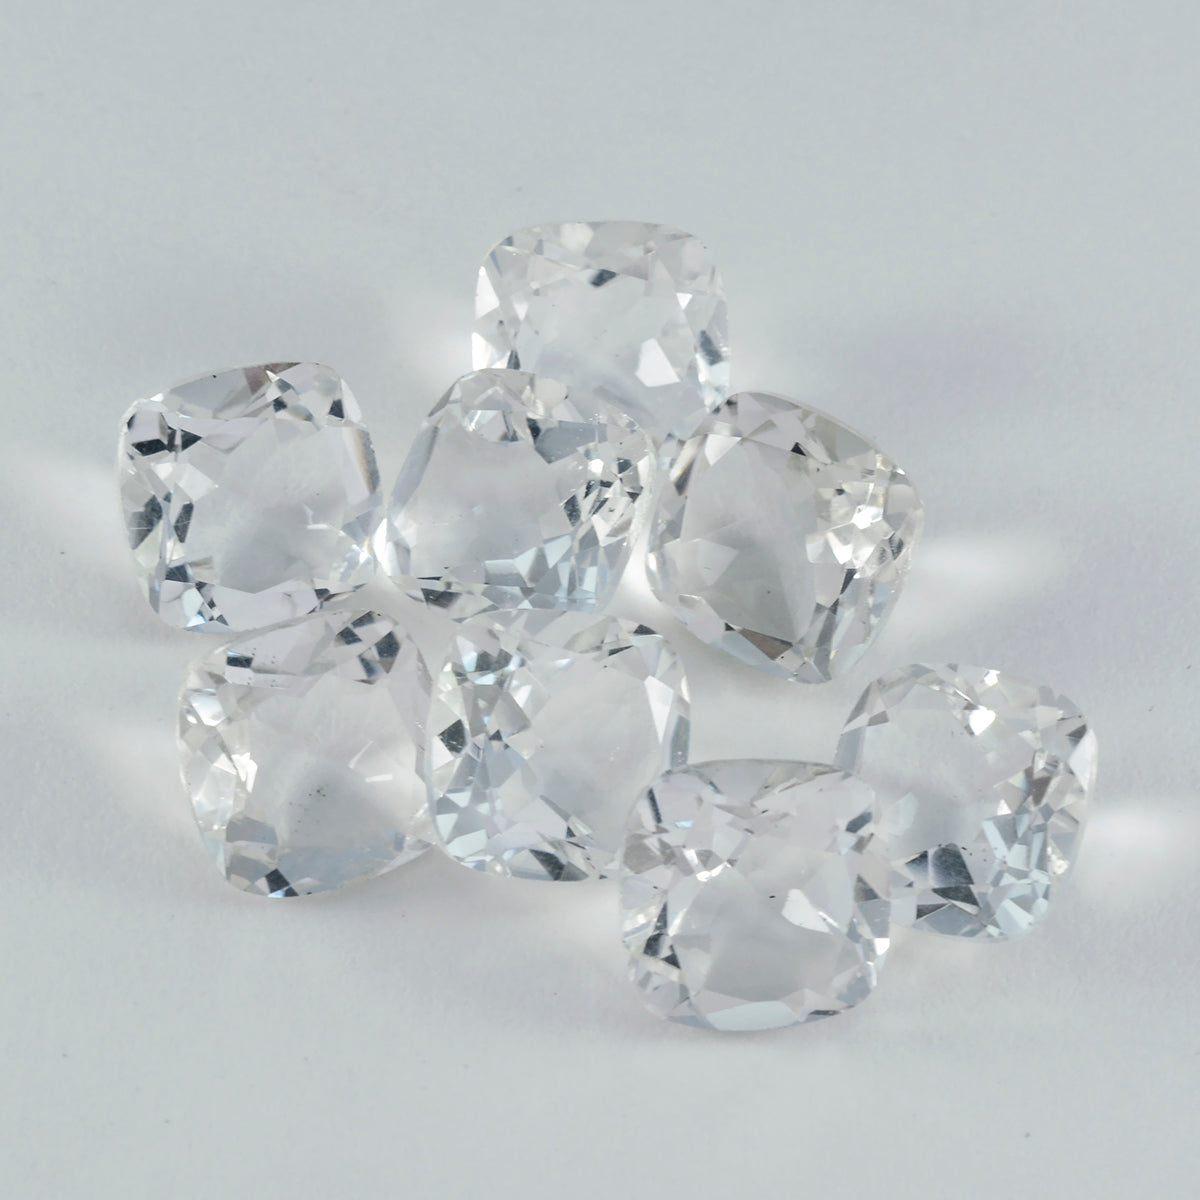 riyogems 1 шт., белый кристалл кварца, граненый 8x8 мм, в форме подушки, красивое качество, свободный драгоценный камень